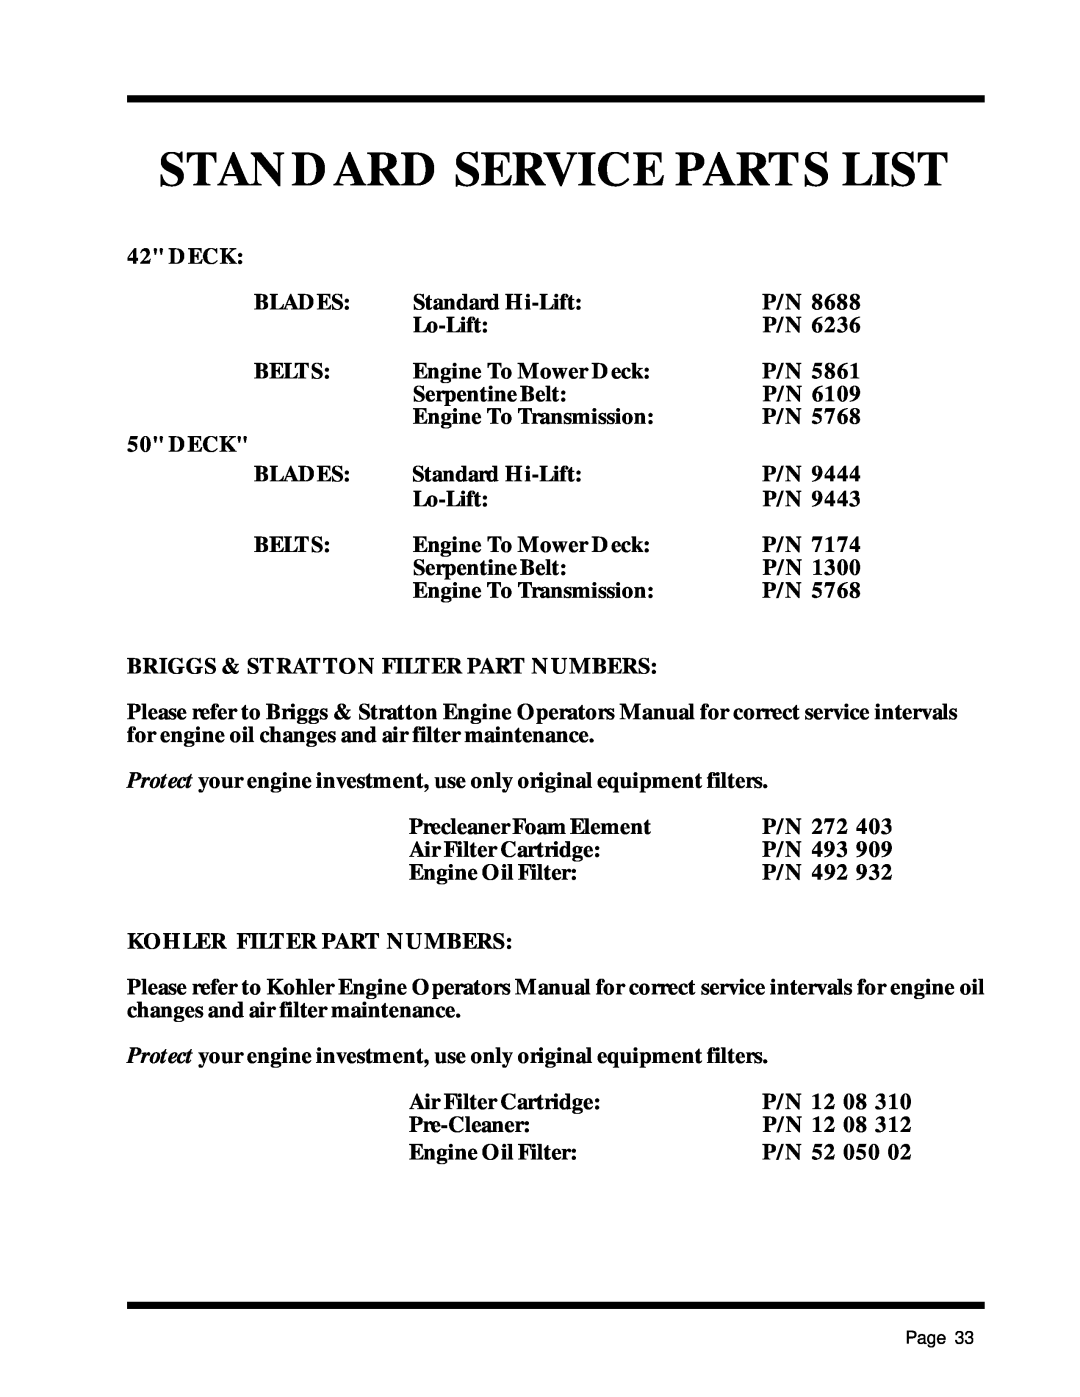 Dixon 1857-0599 manual Standard Service Parts List 